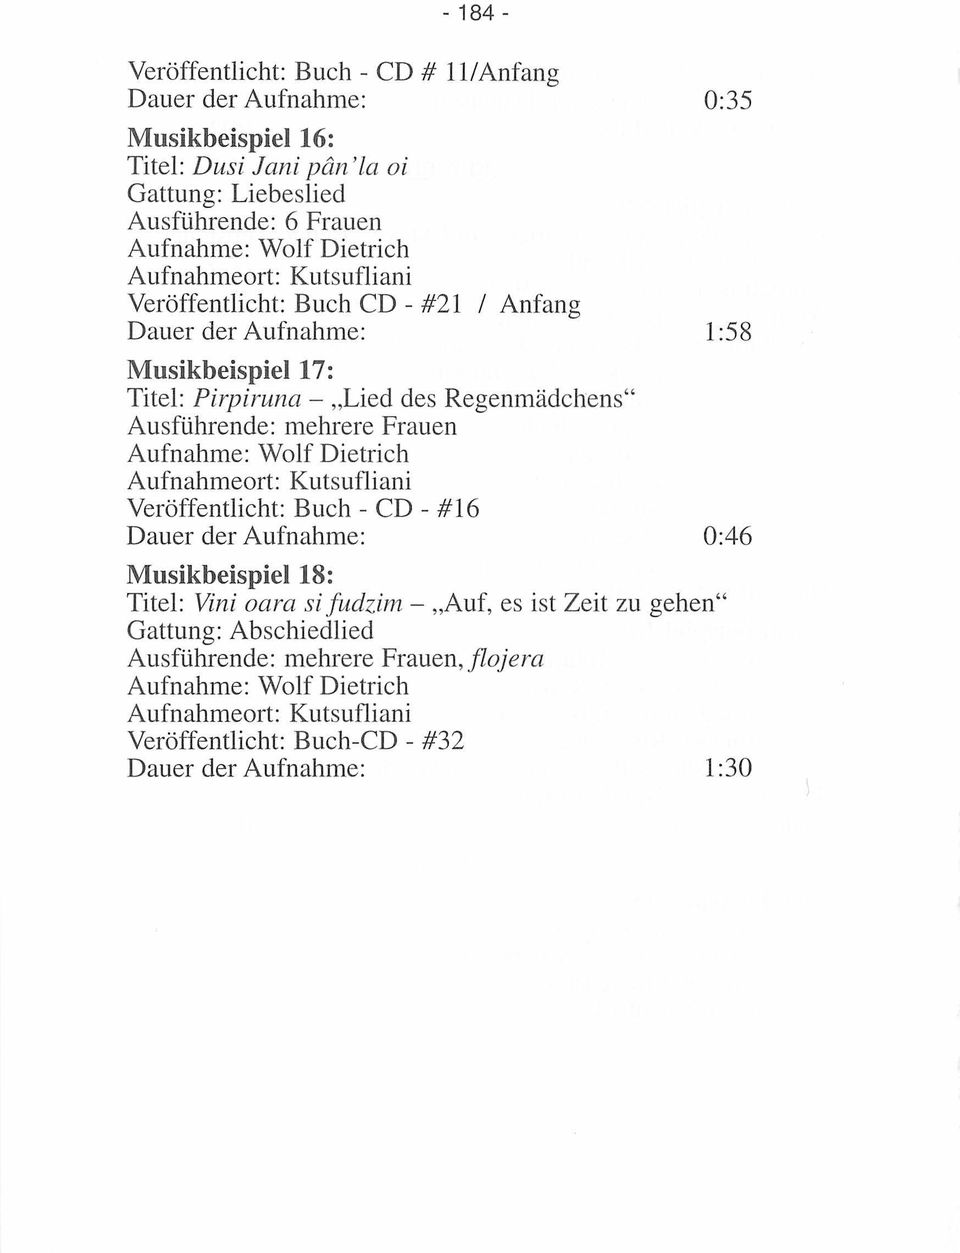 Regenmädchens" Ausführende: mehrere Frauen Veröffentlicht: Buch - CD - #16 0:46 Musikbeispiel 18: Titel: Vini oara si